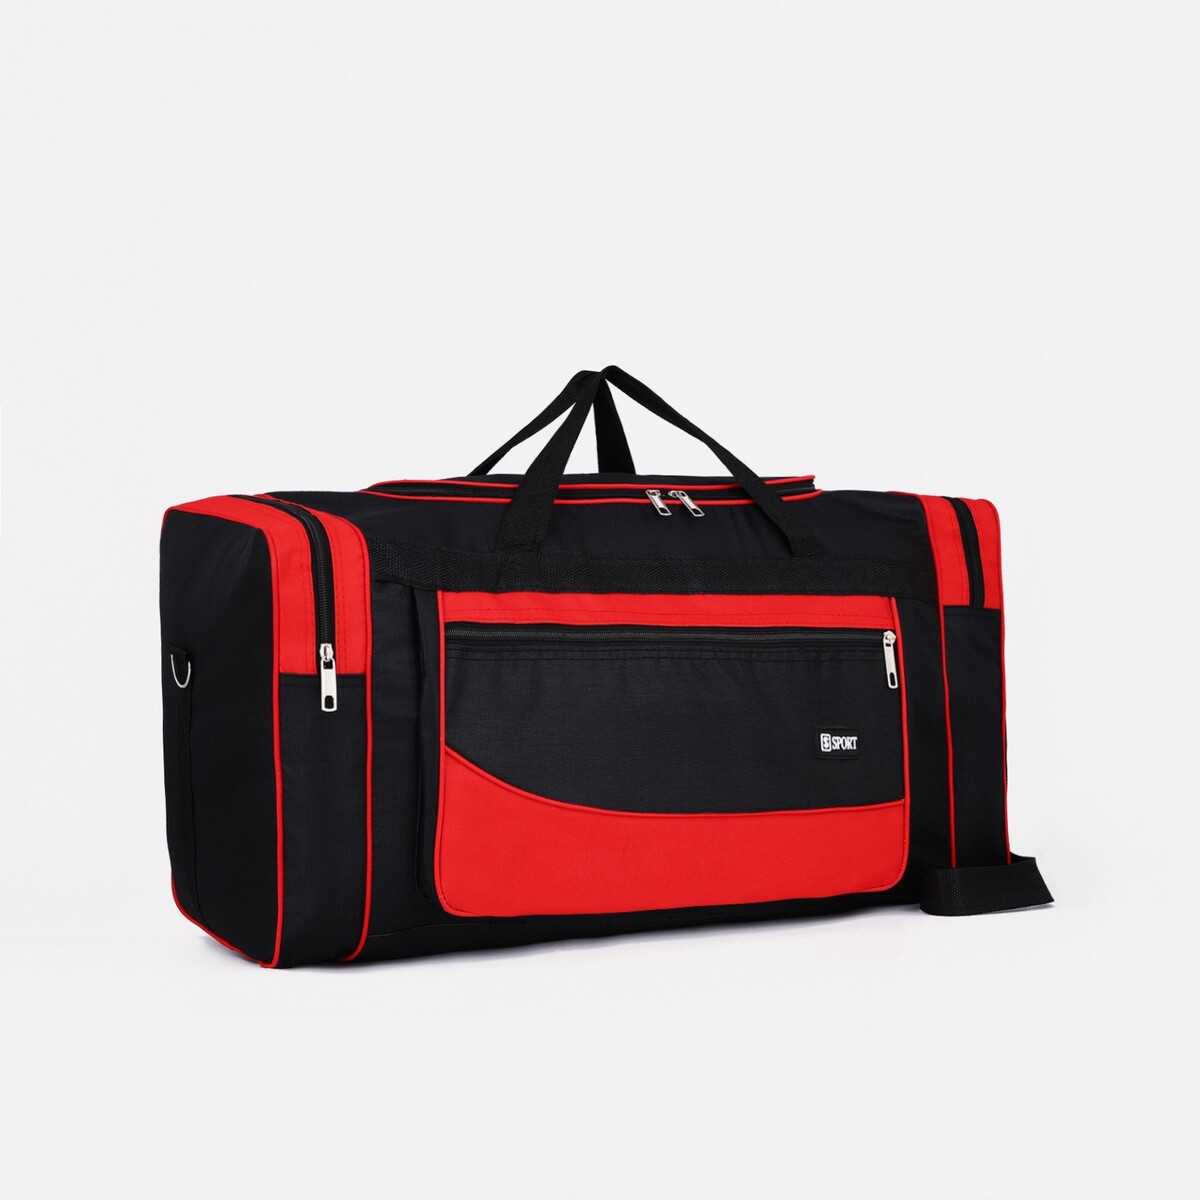 Сумка дорожная, 3 отдела на молниях, наружный карман, длинный ремень, цвет черный/красный сумка мессенджер на клапане наружный карман длинный ремень бордовый